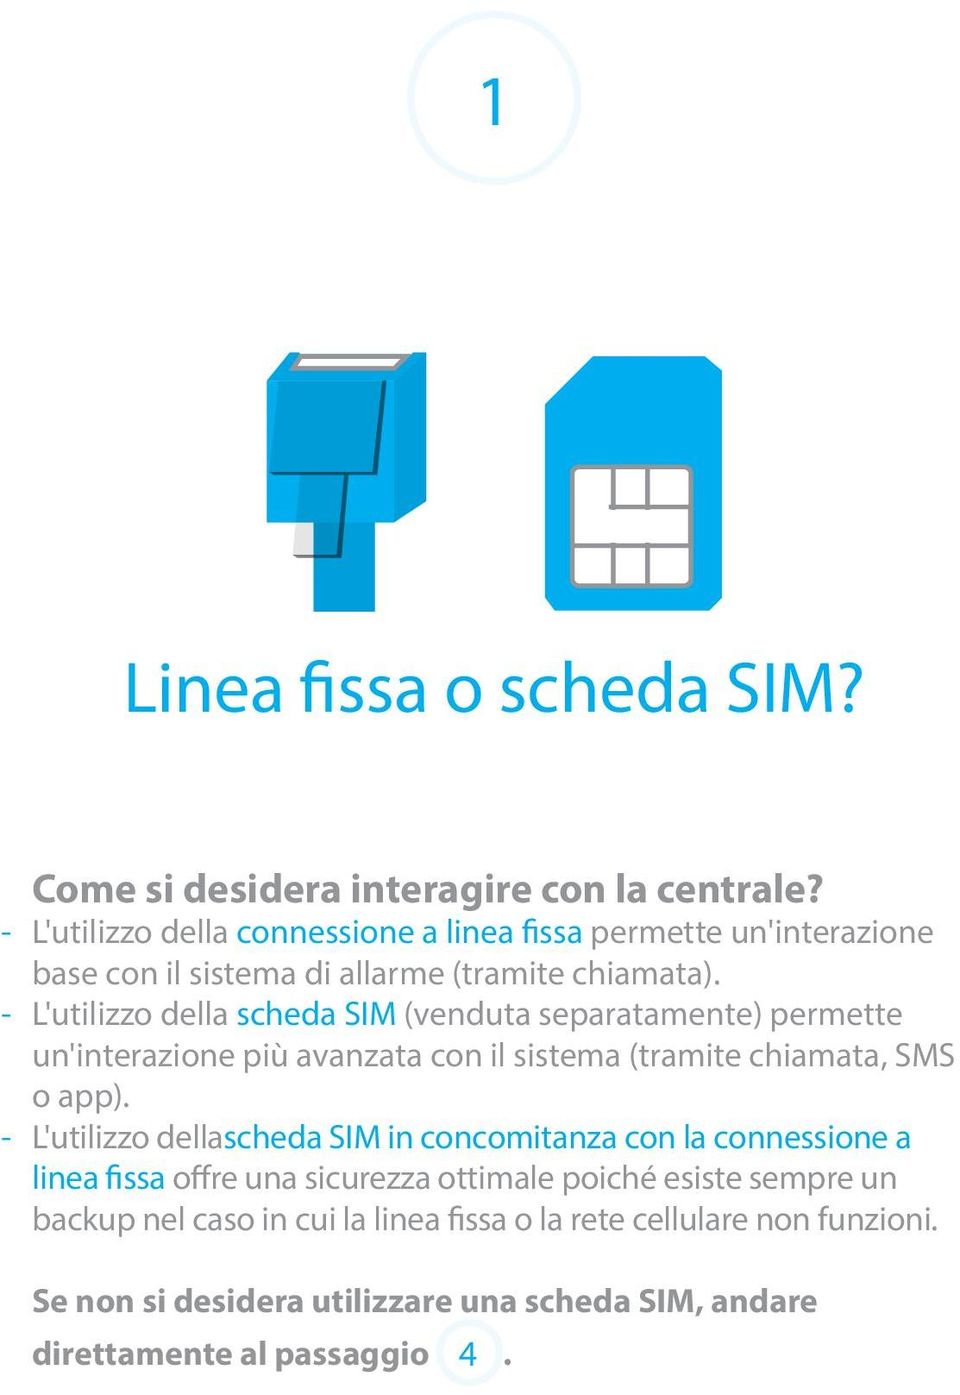 - L'utilizzo della scheda SIM (venduta separatamente) permette un'interazione più avanzata con il sistema (tramite chiamata, SMS o app).